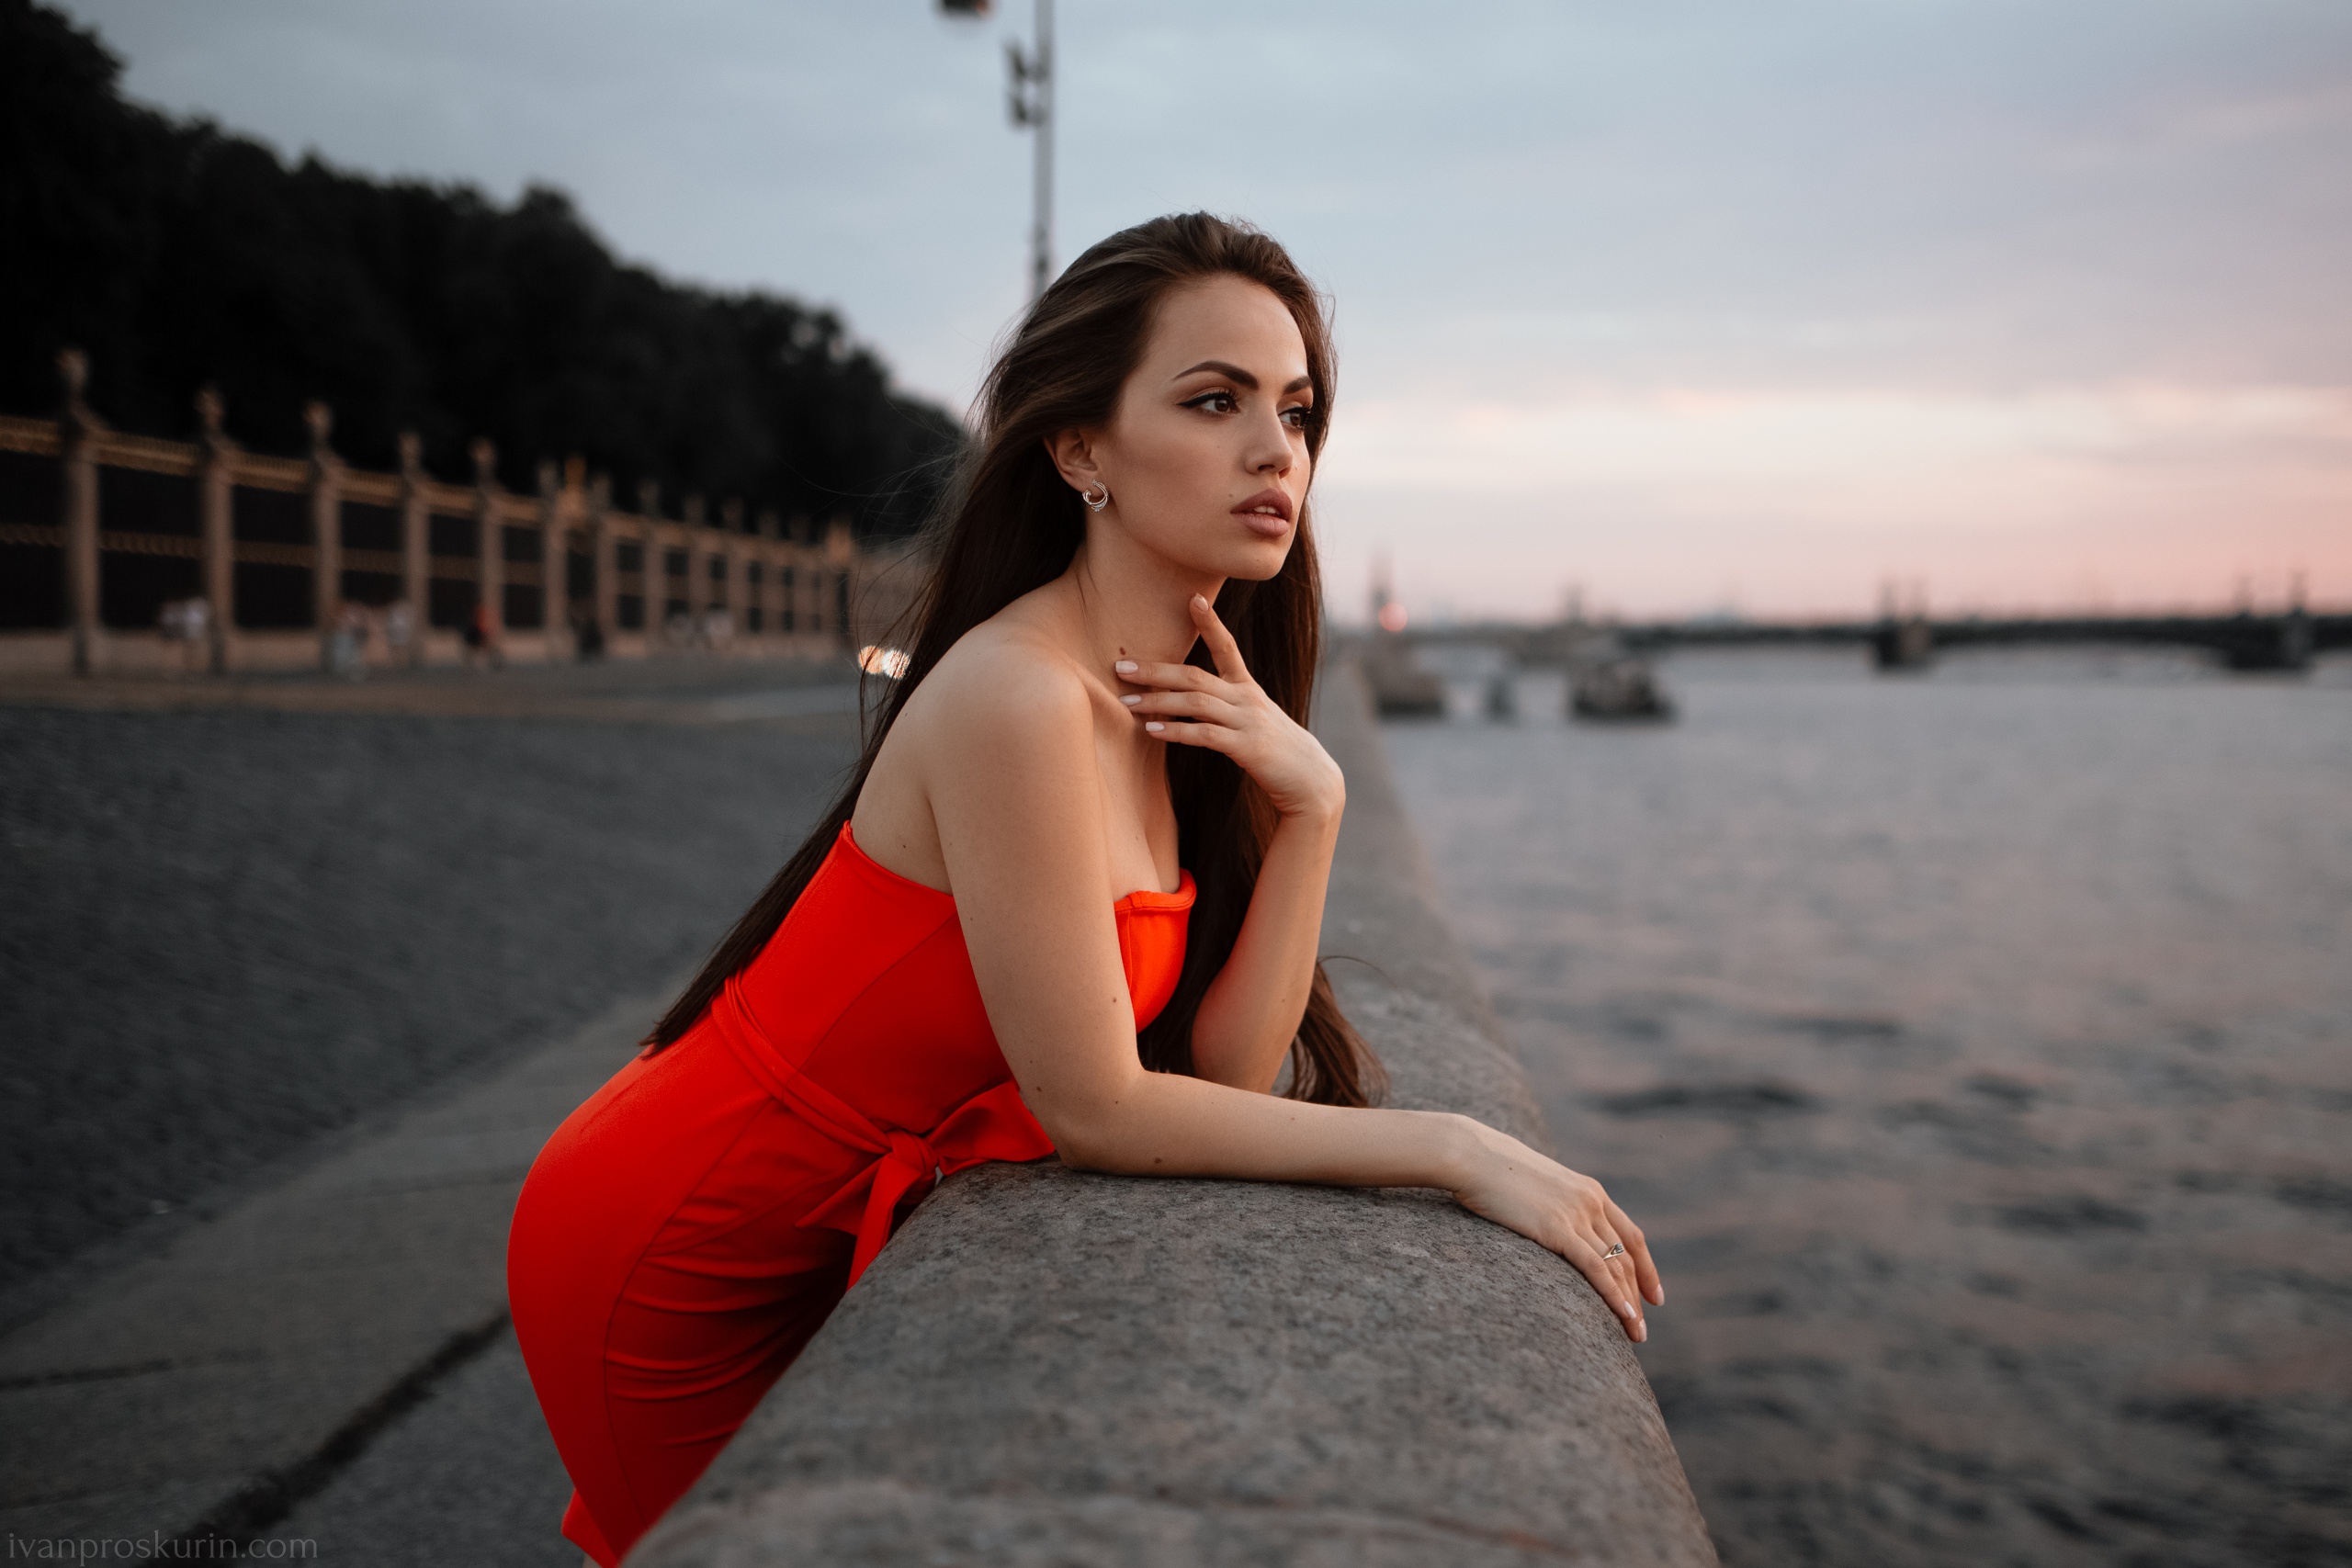 Model Women Red Lipstick Red Dress Long Hair Women Outdoors Zemfira Ismailova 2560x1707